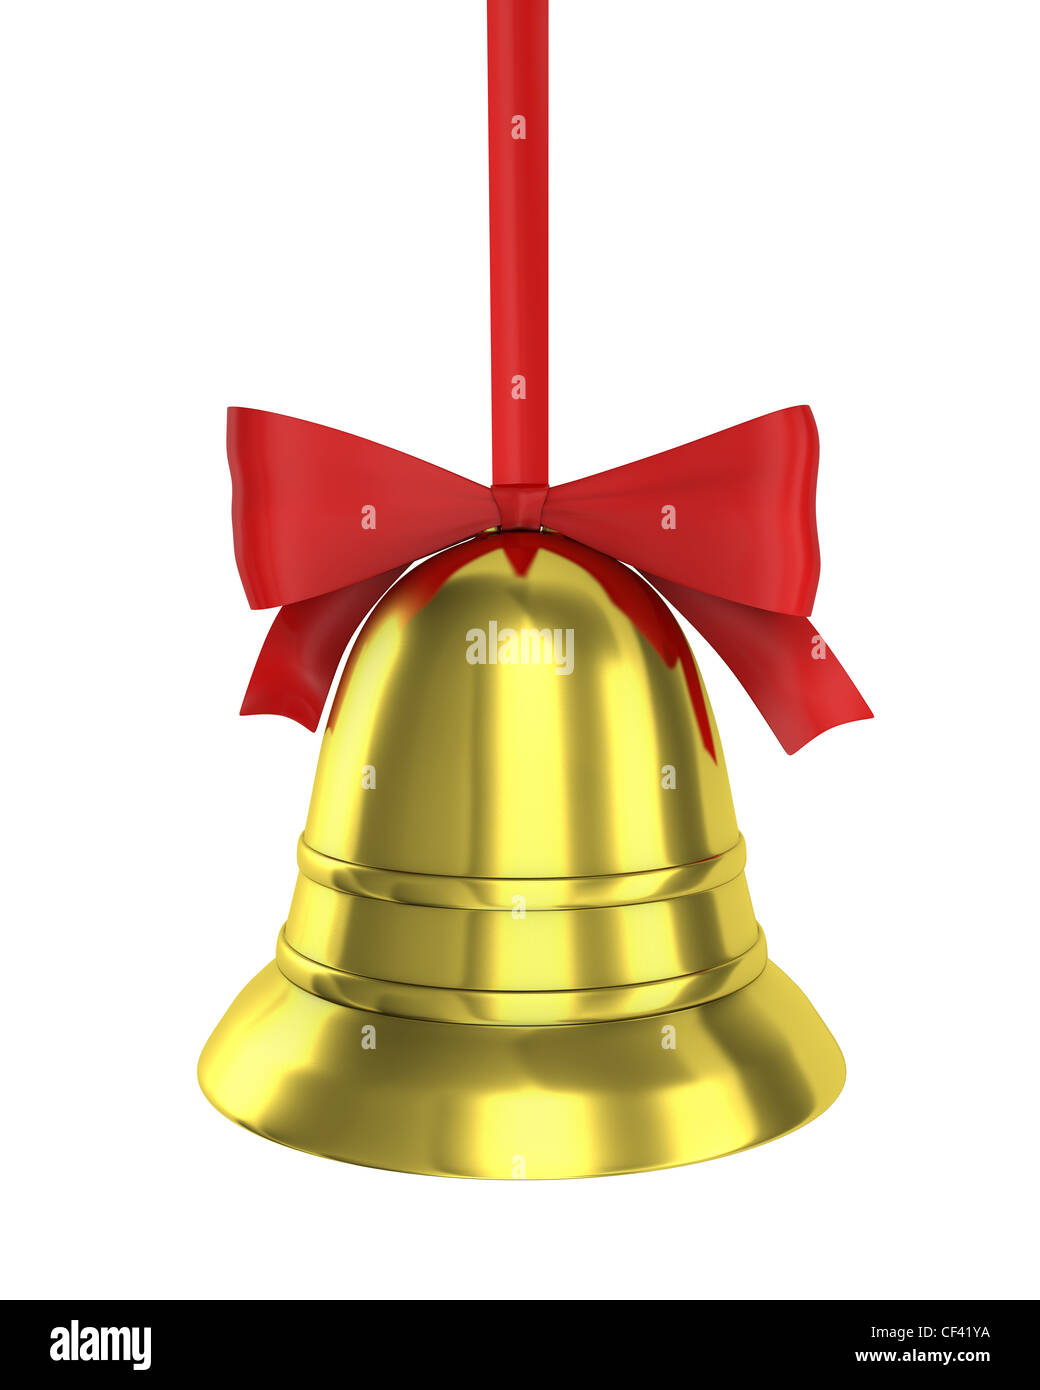 Bell noël avec ruban rouge isolé sur fond blanc Banque D'Images